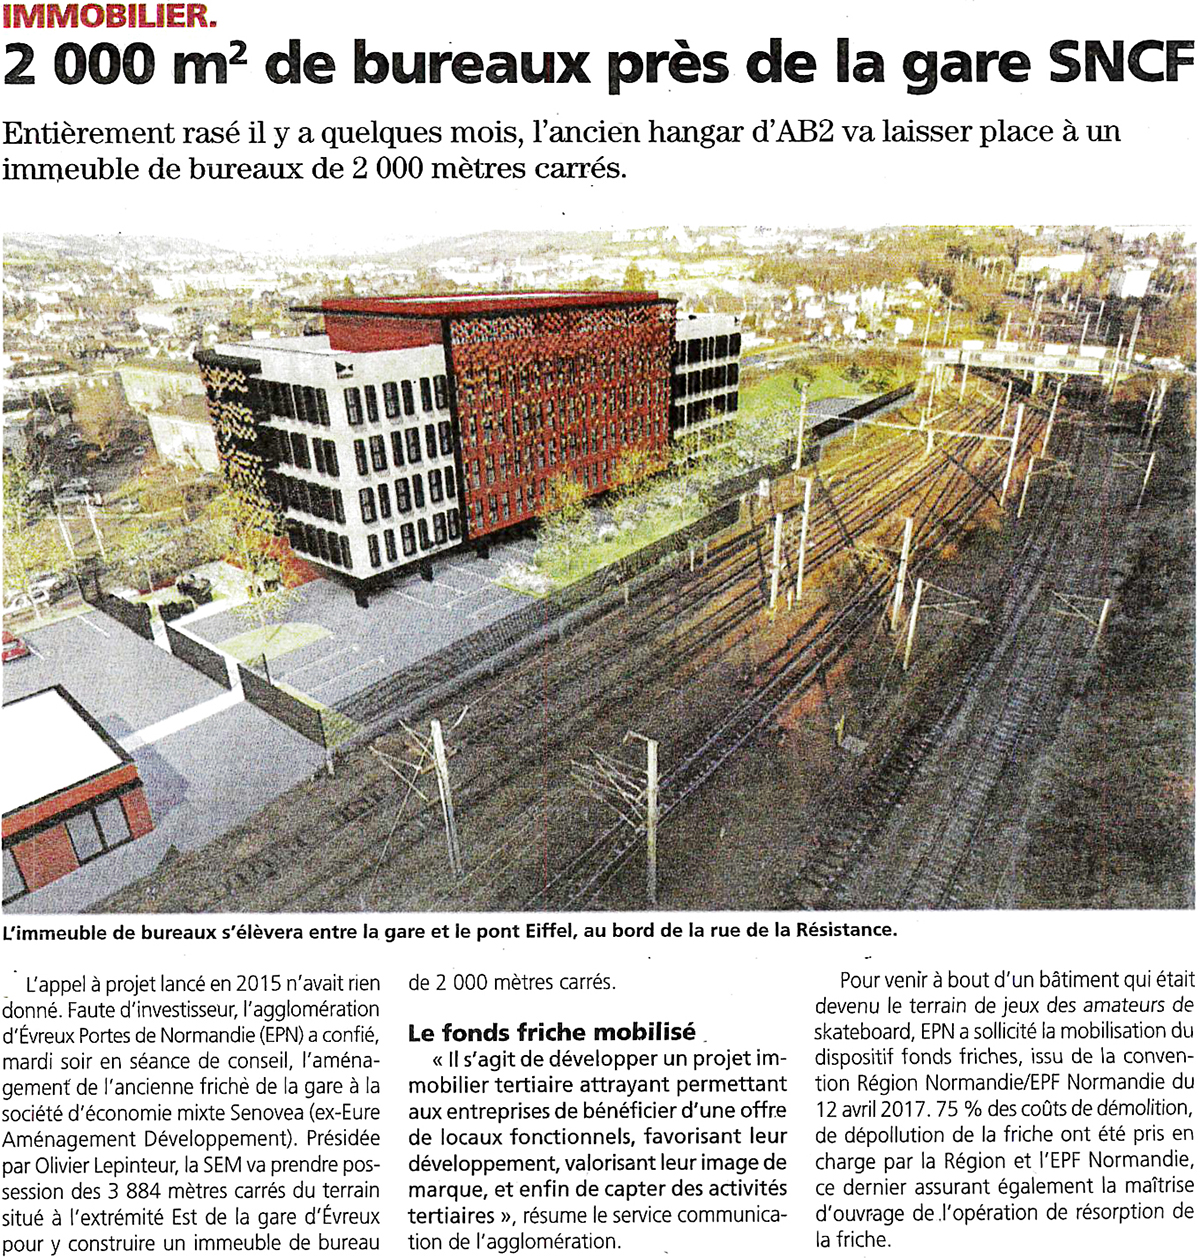 La Depeche - 2000 m² de bureaux près de la gare SNCF